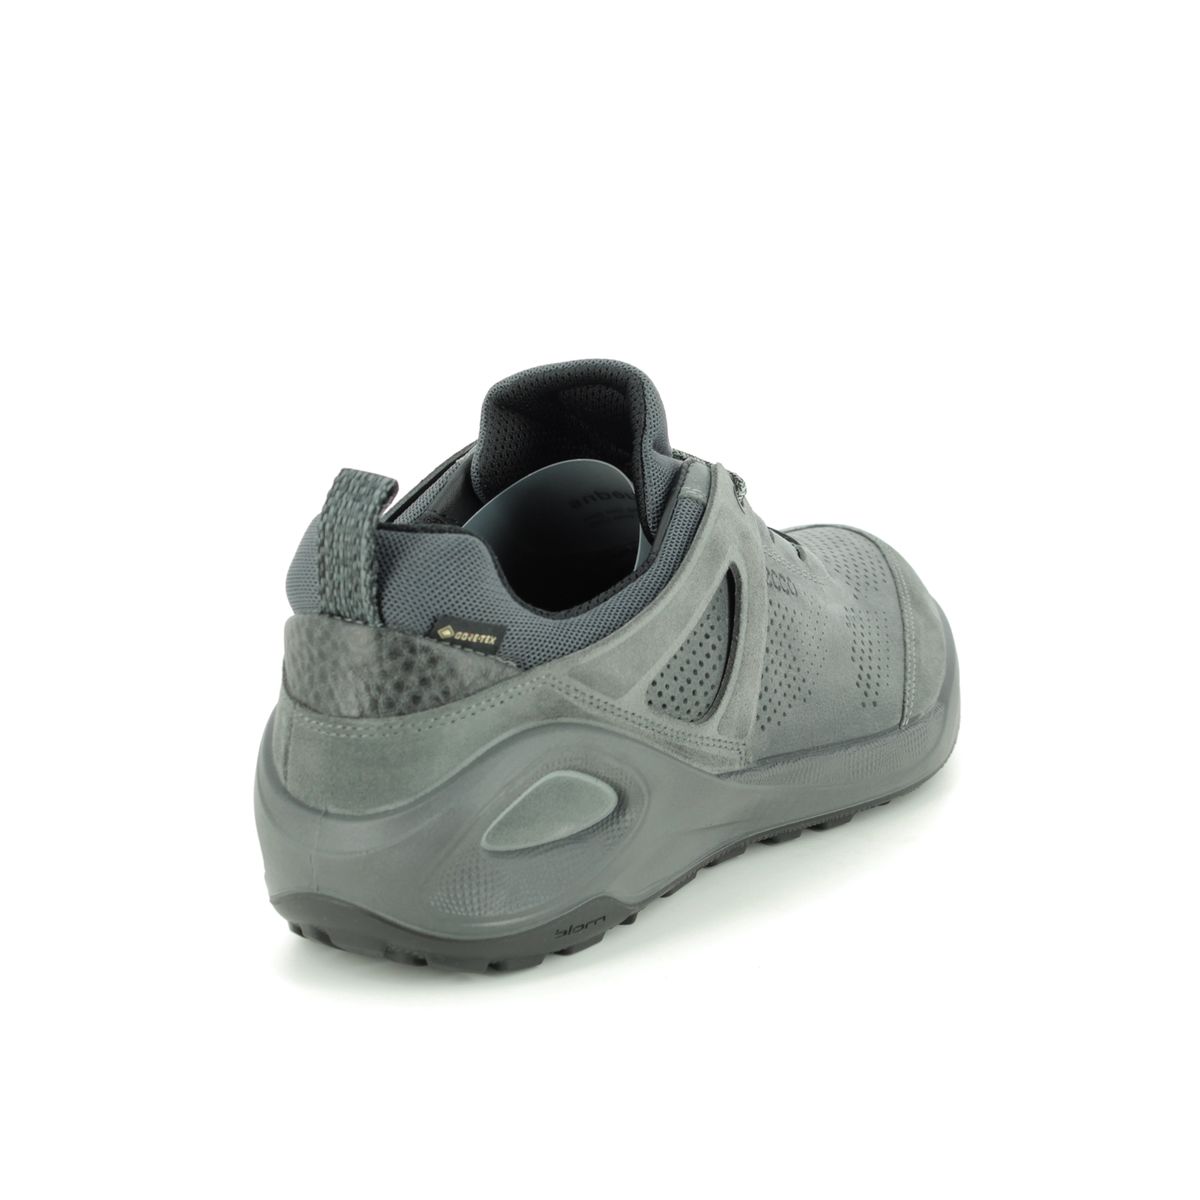 ECCO Biom 2go Gore 801904-52664 Grey Suede comfort shoes